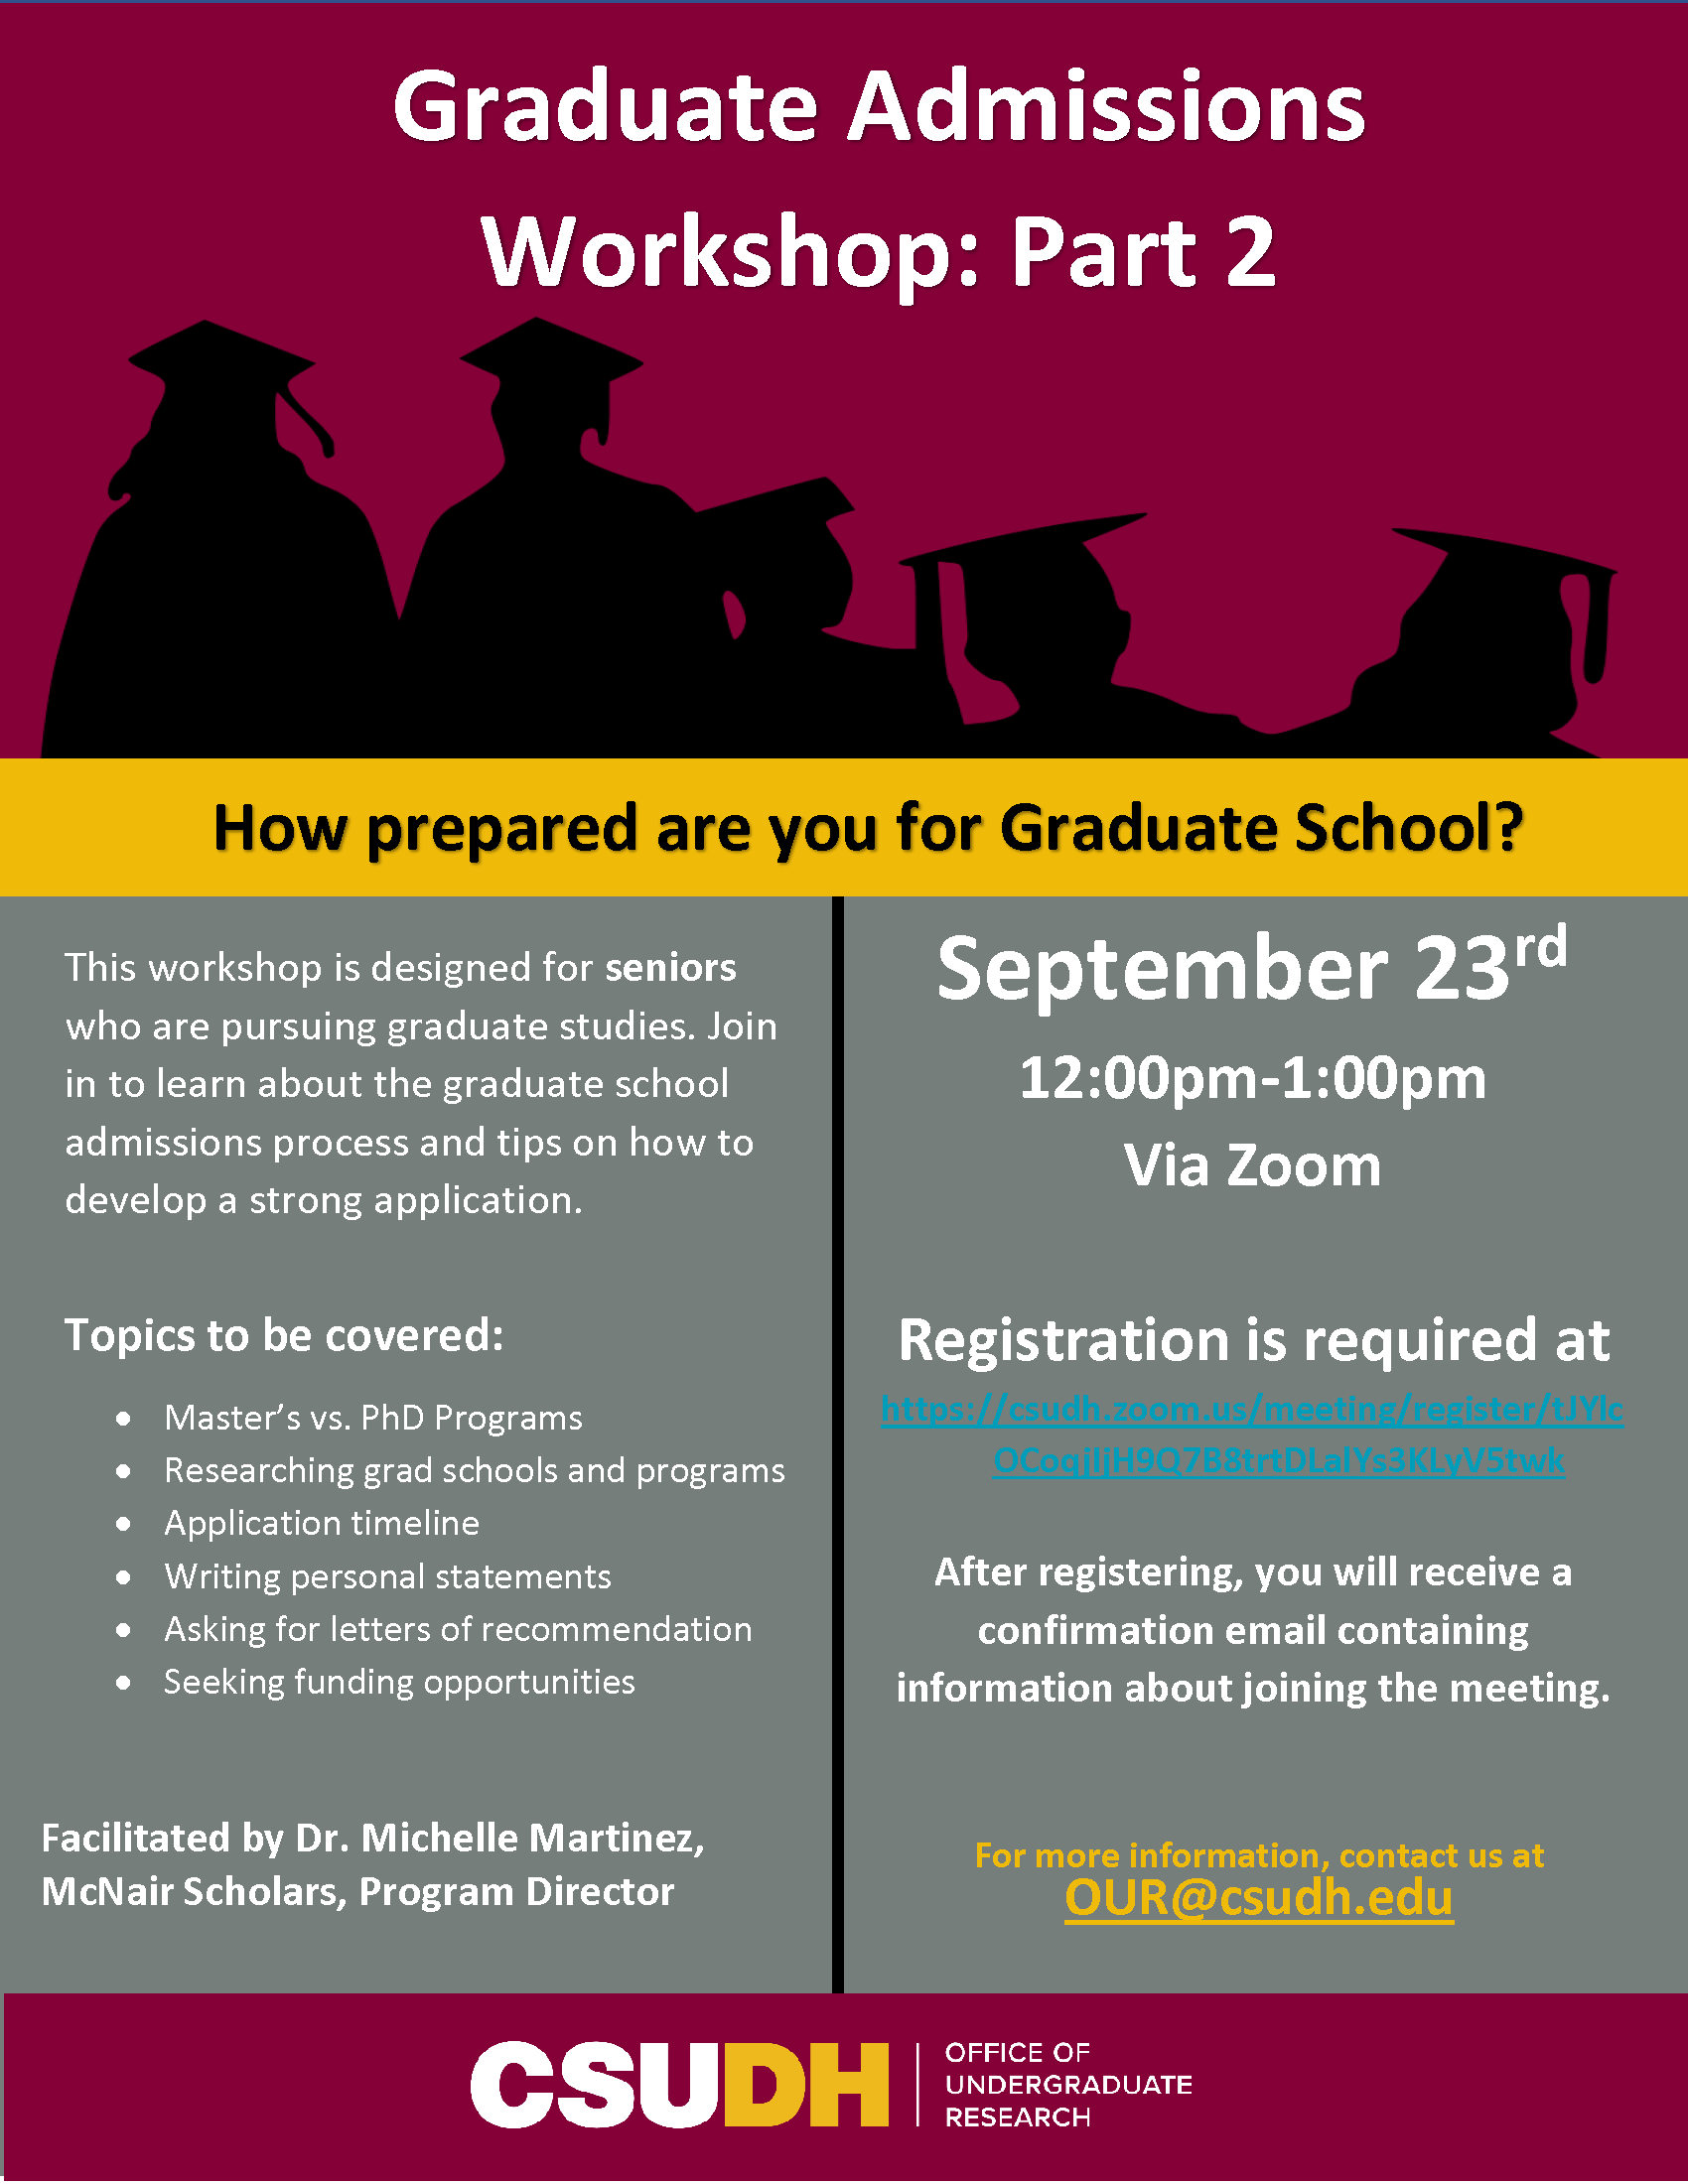 Graduate Admissions Workshop- Part 2 Flyer